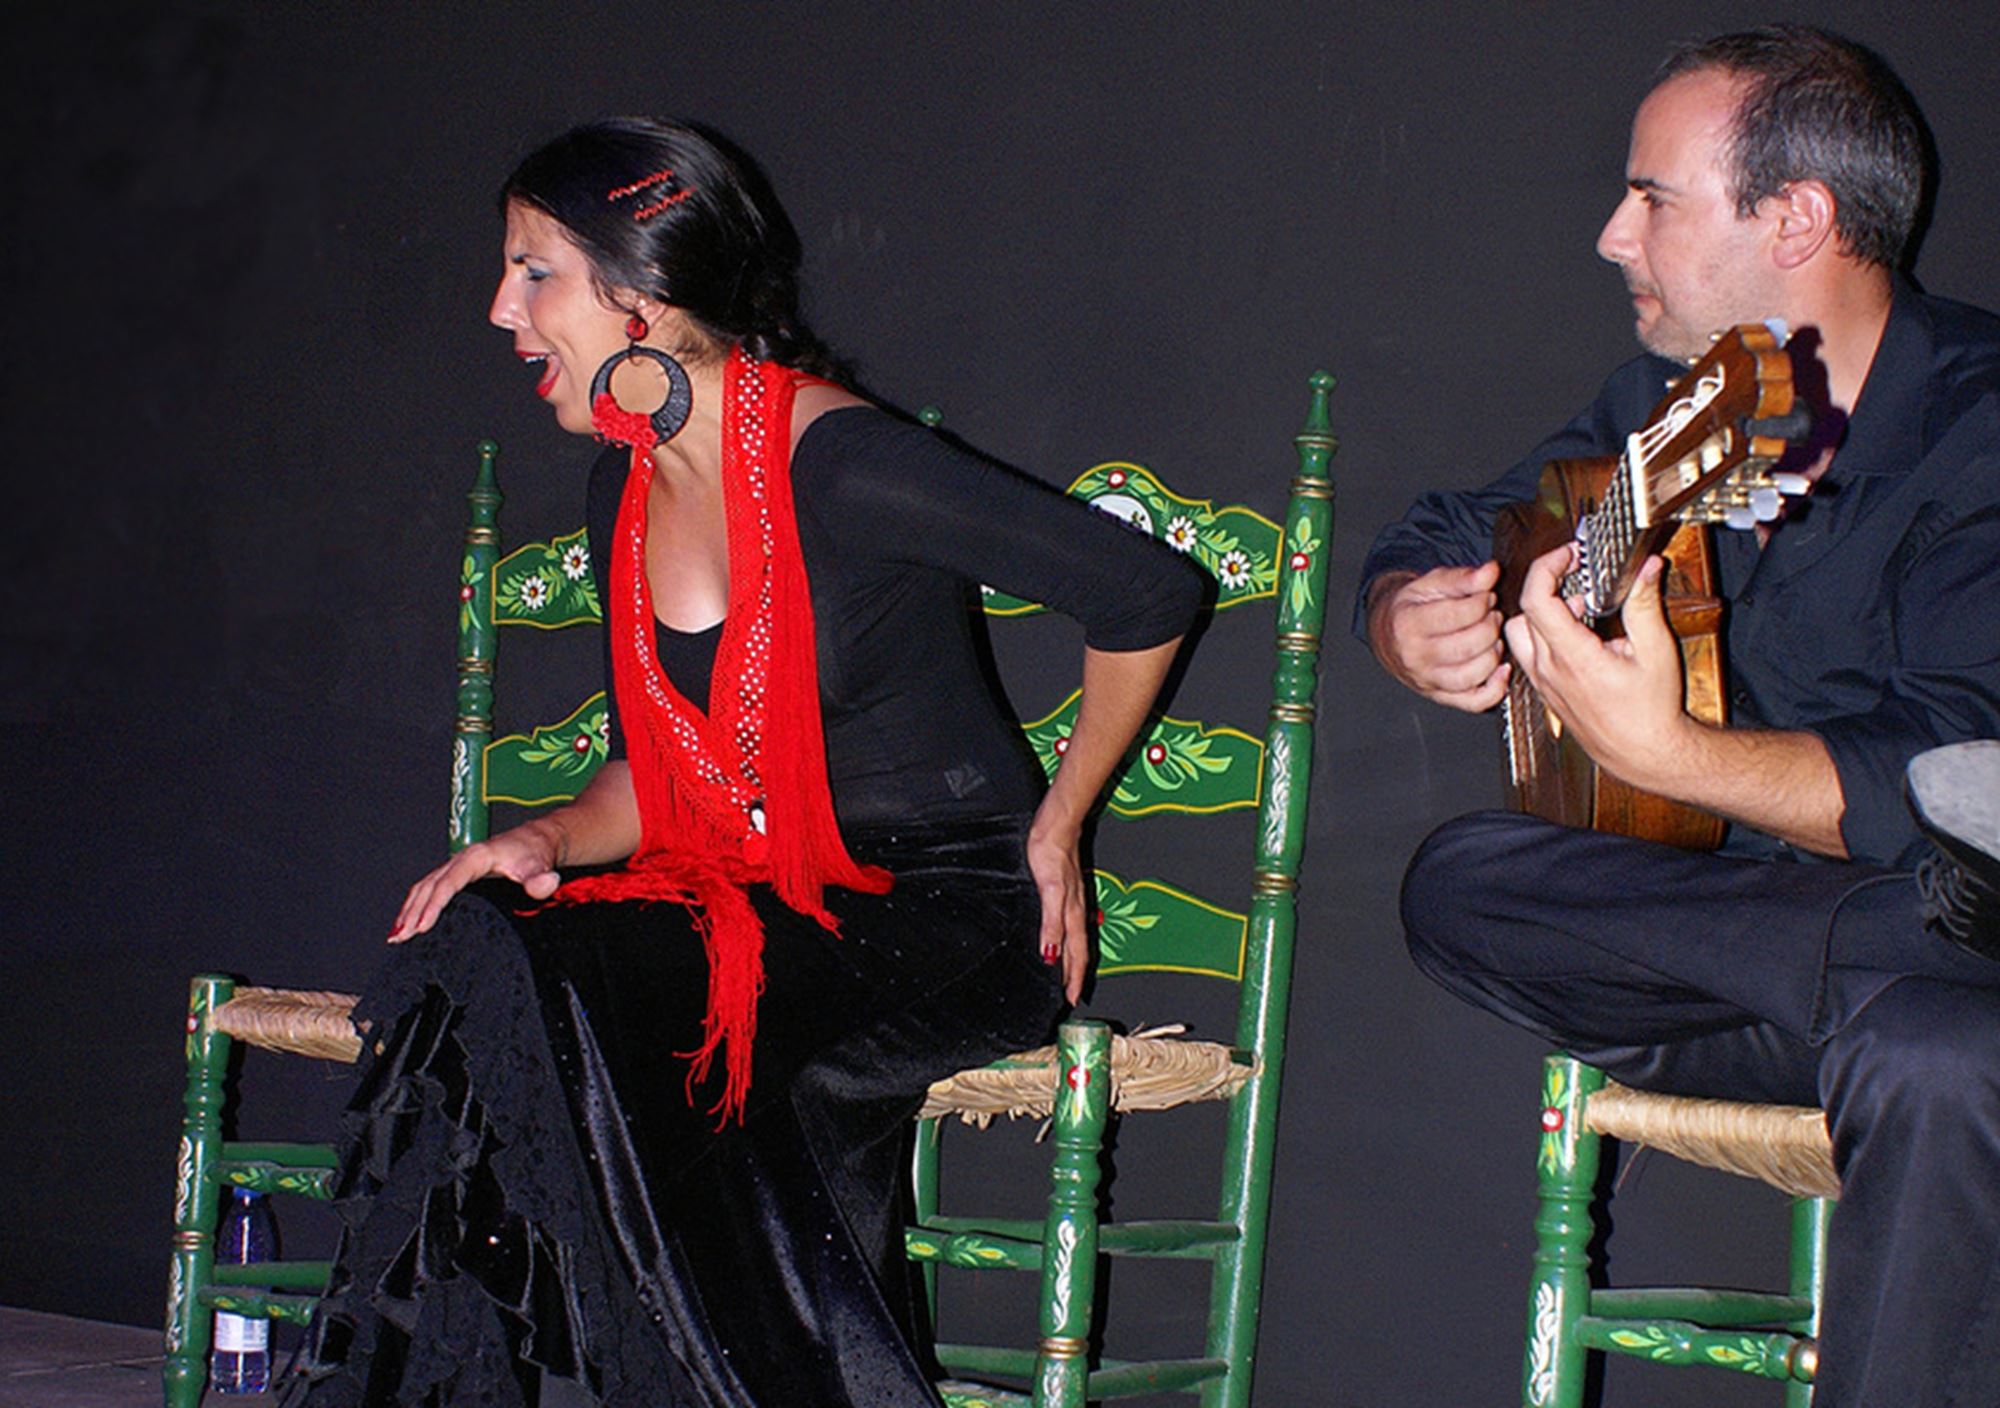 reservieren tickets besucht Touren Fahrkarte Eintrittskarten Show Tablao Flamenco Felahmengu rompido Huelva